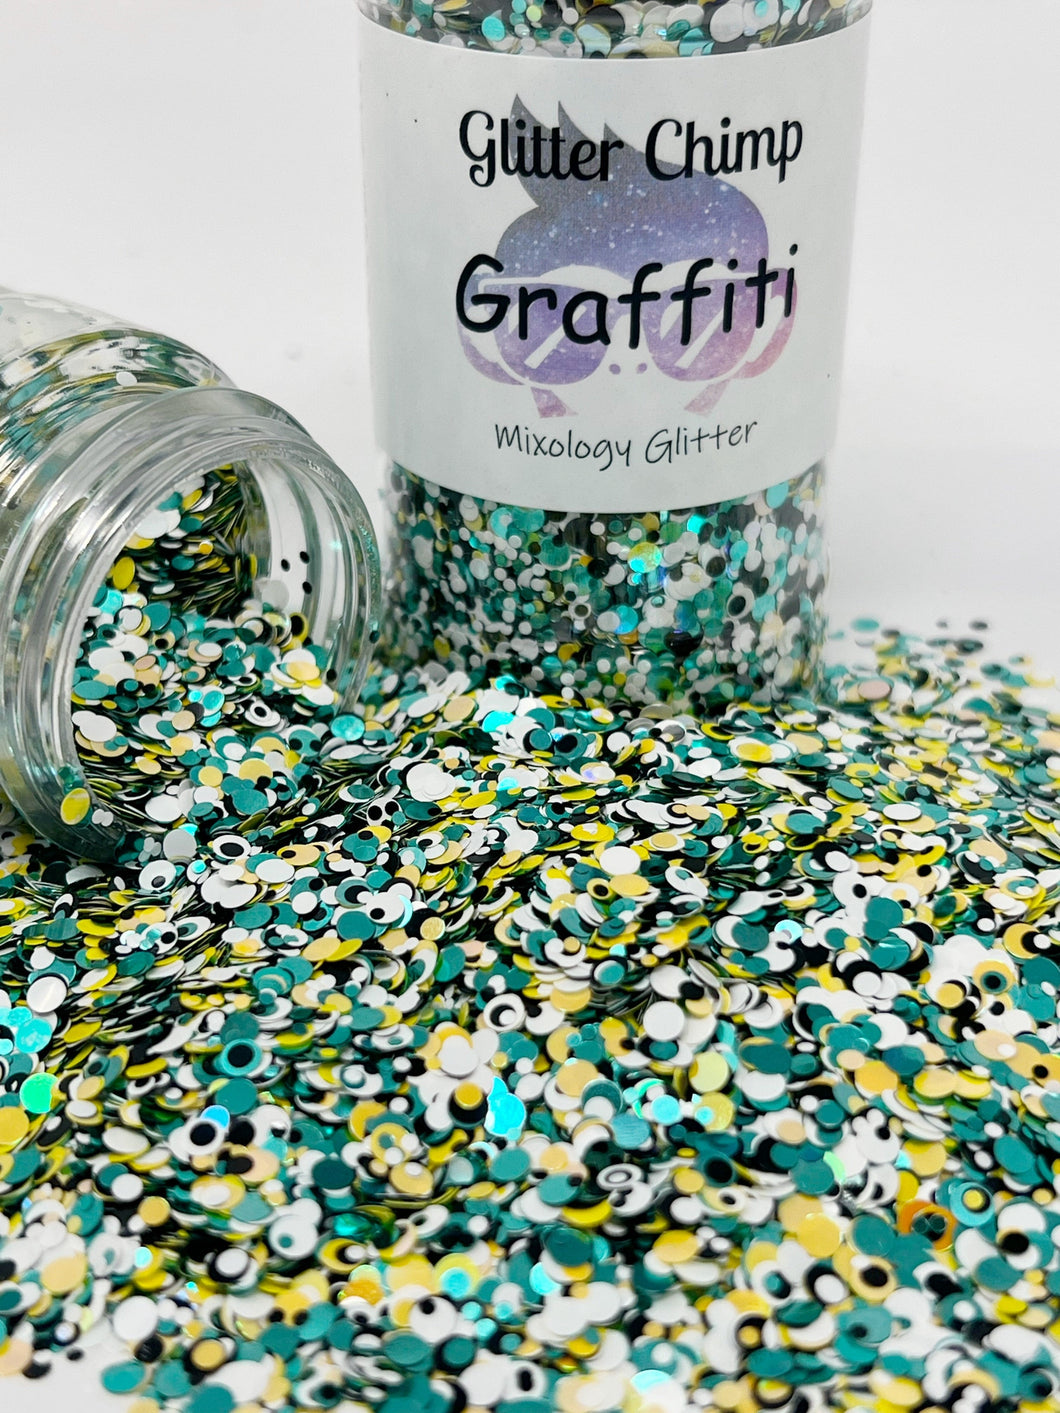 Graffiti - Mixology Glitter